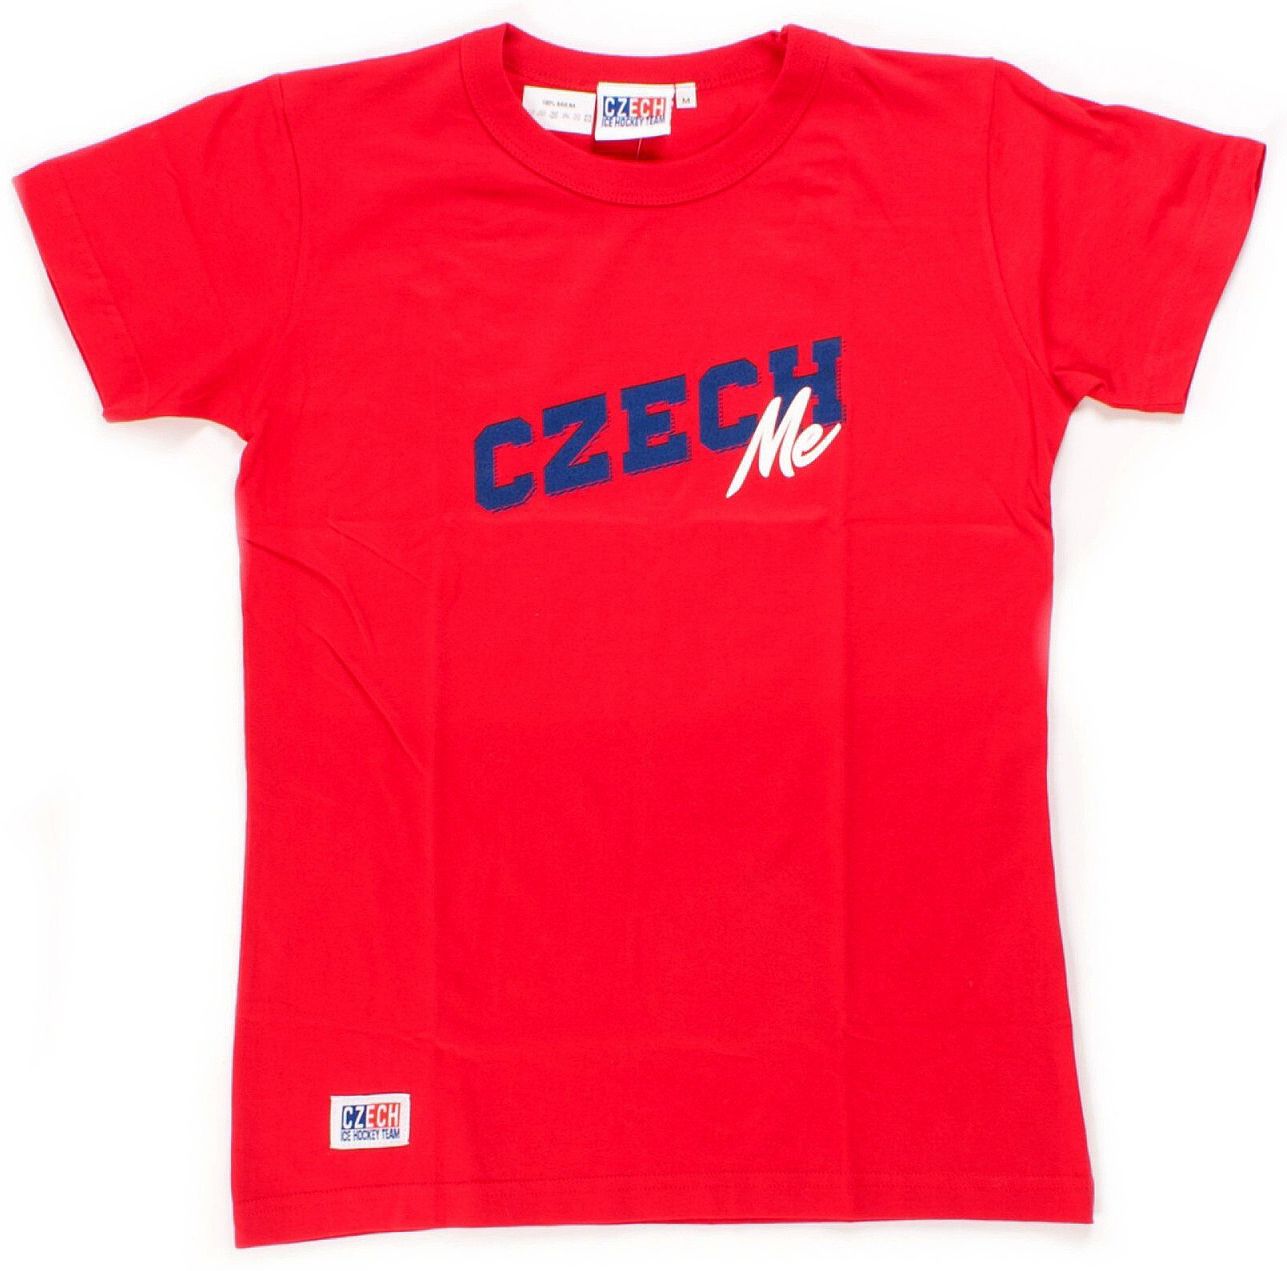 T-Shirt - Czech Me